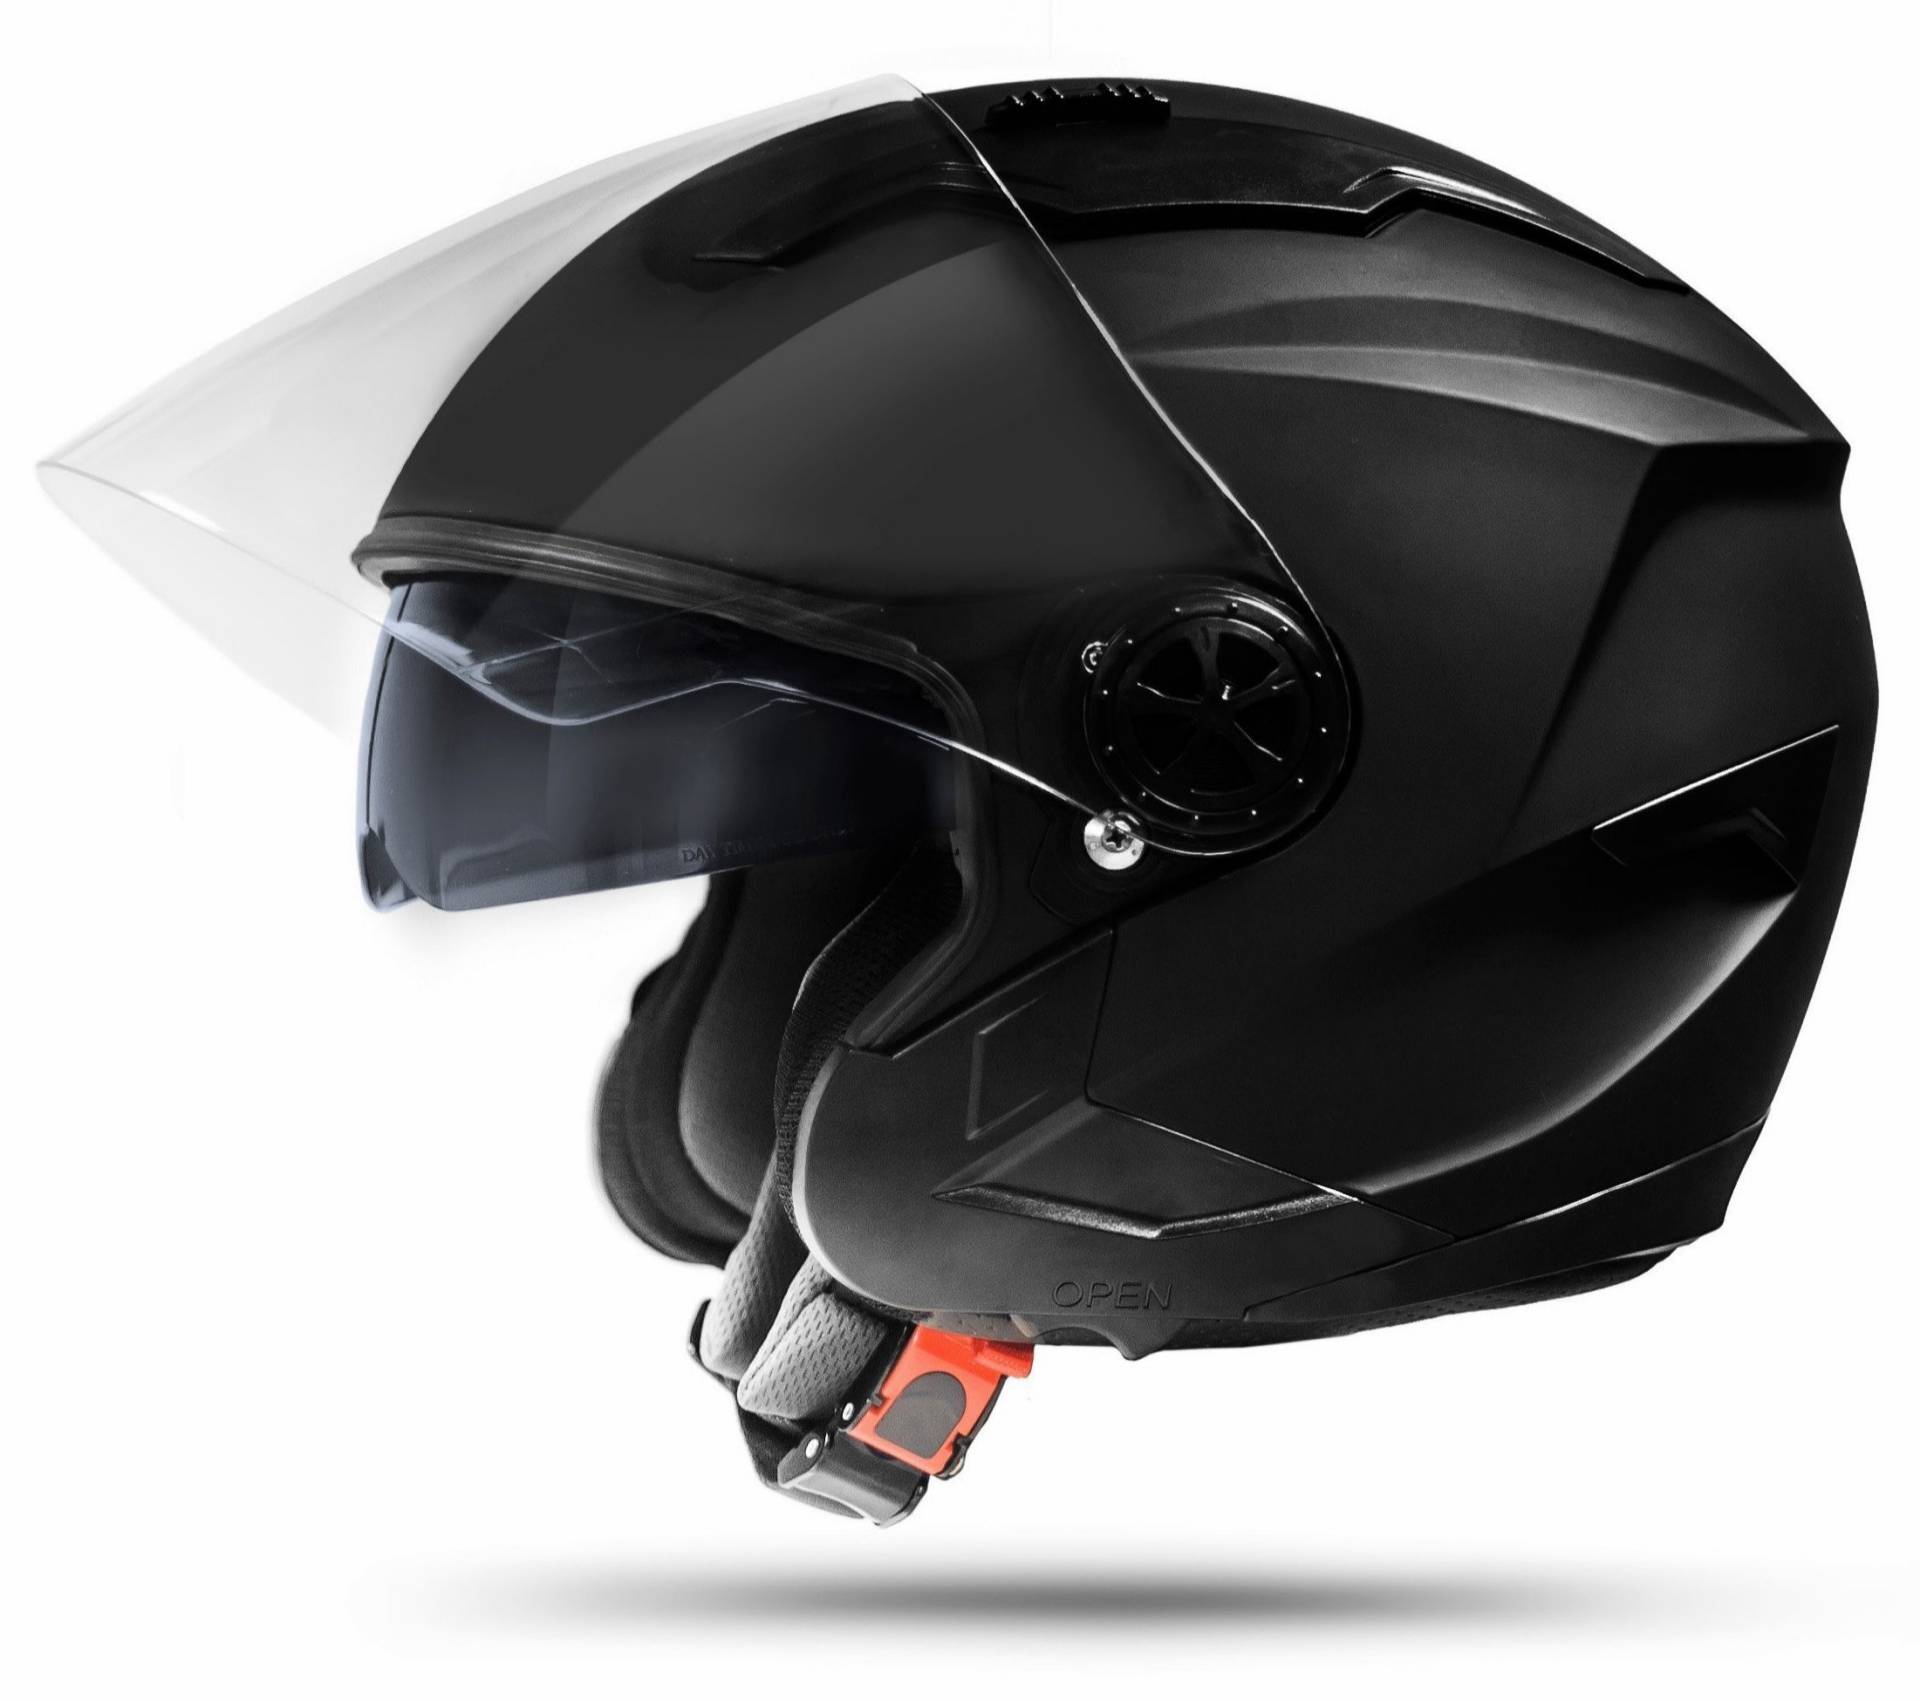 ATO-Moto Jet Helm LA Street Motorradhelm mit Doppelvisier System Integrierte Visiermechanik 4 Punkt Belüftung und neuster Sicherheitsnorm ECE 2205 Große: L 59-60cm von ATO Moto